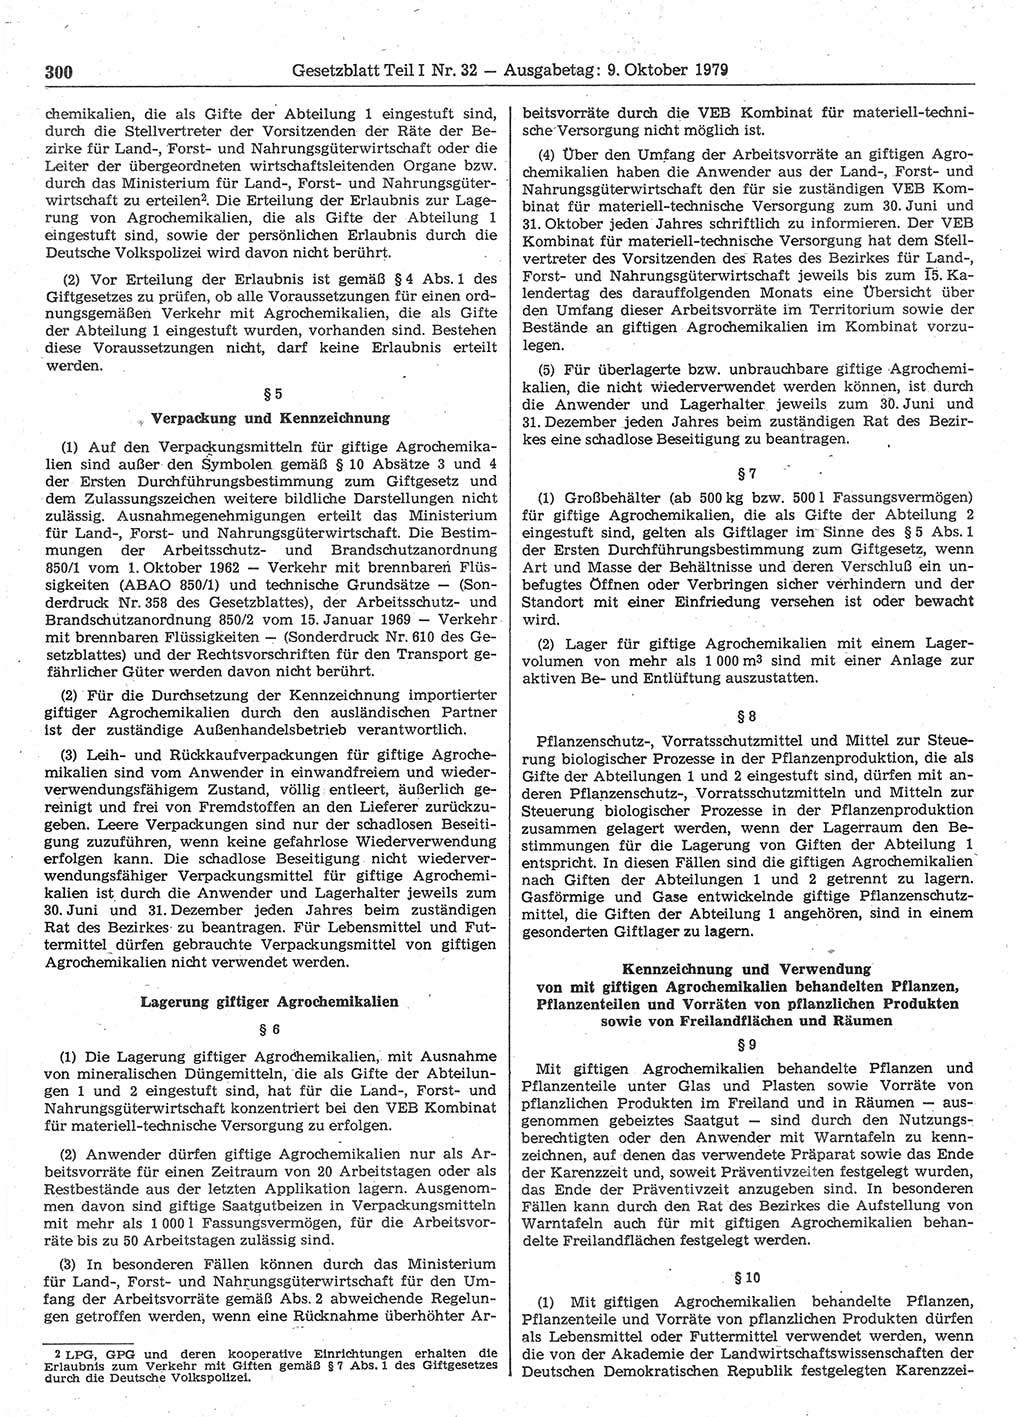 Gesetzblatt (GBl.) der Deutschen Demokratischen Republik (DDR) Teil Ⅰ 1979, Seite 300 (GBl. DDR Ⅰ 1979, S. 300)